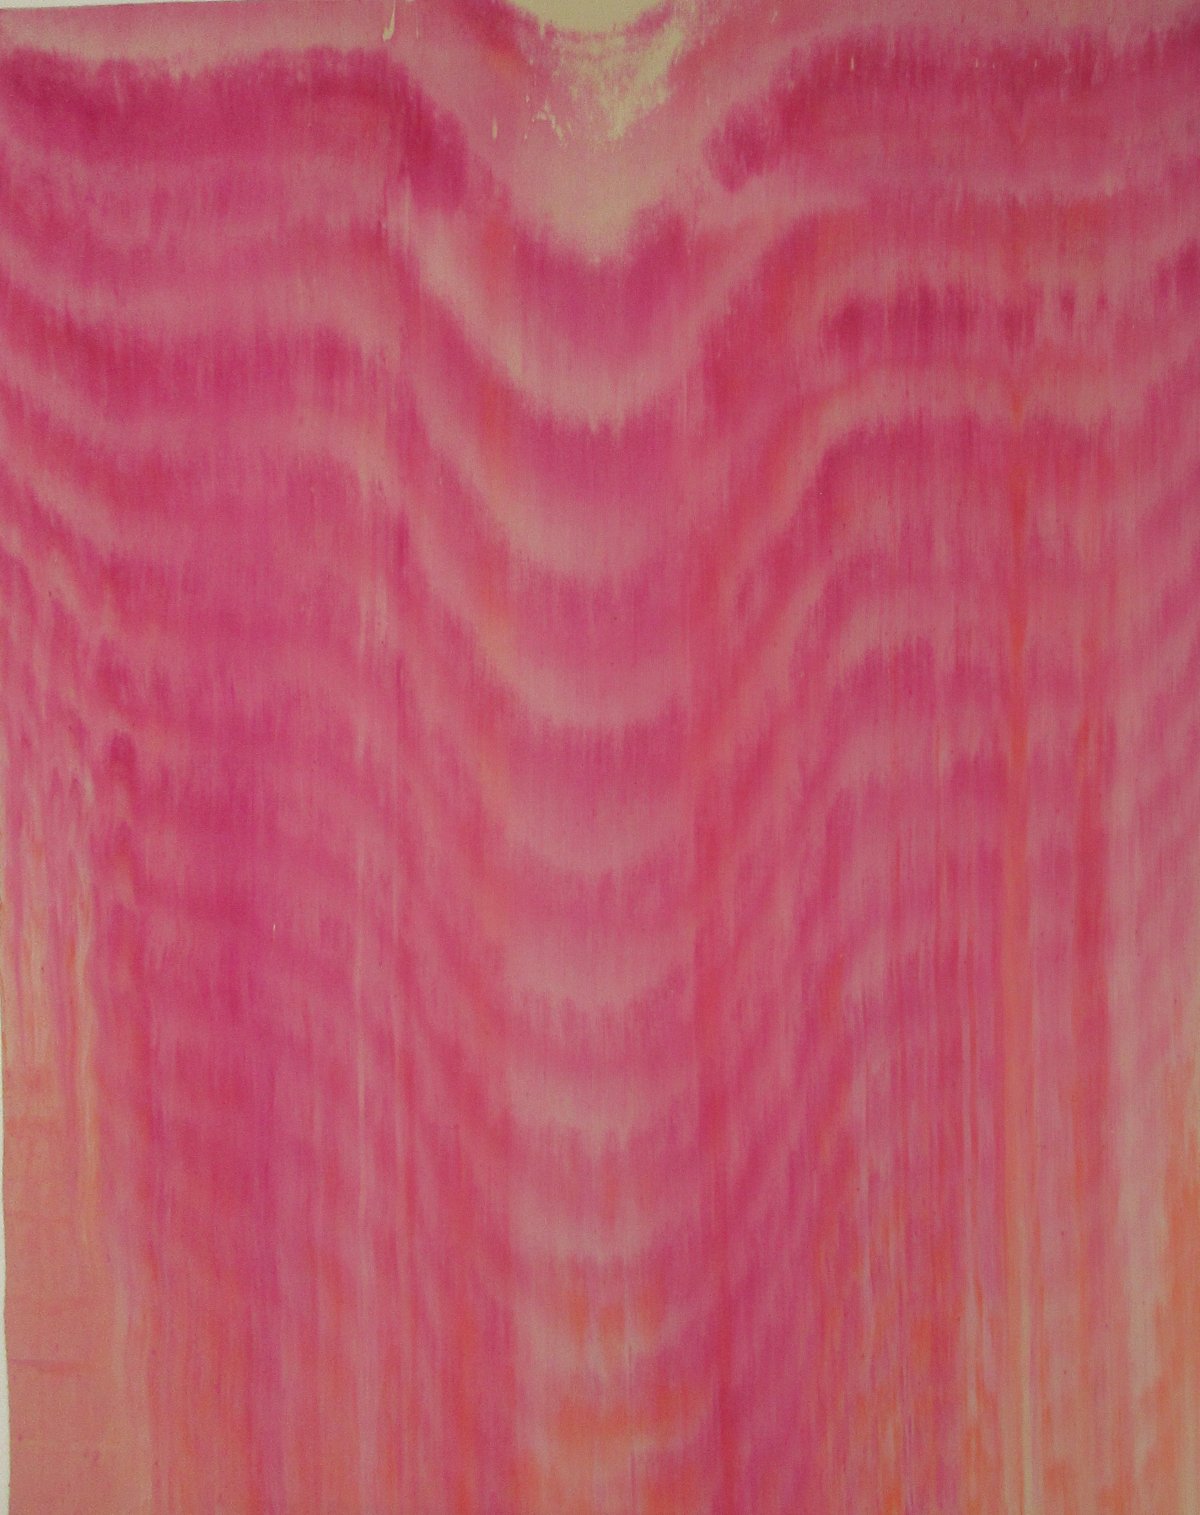 Gene Hedge, Untitled, 1966 